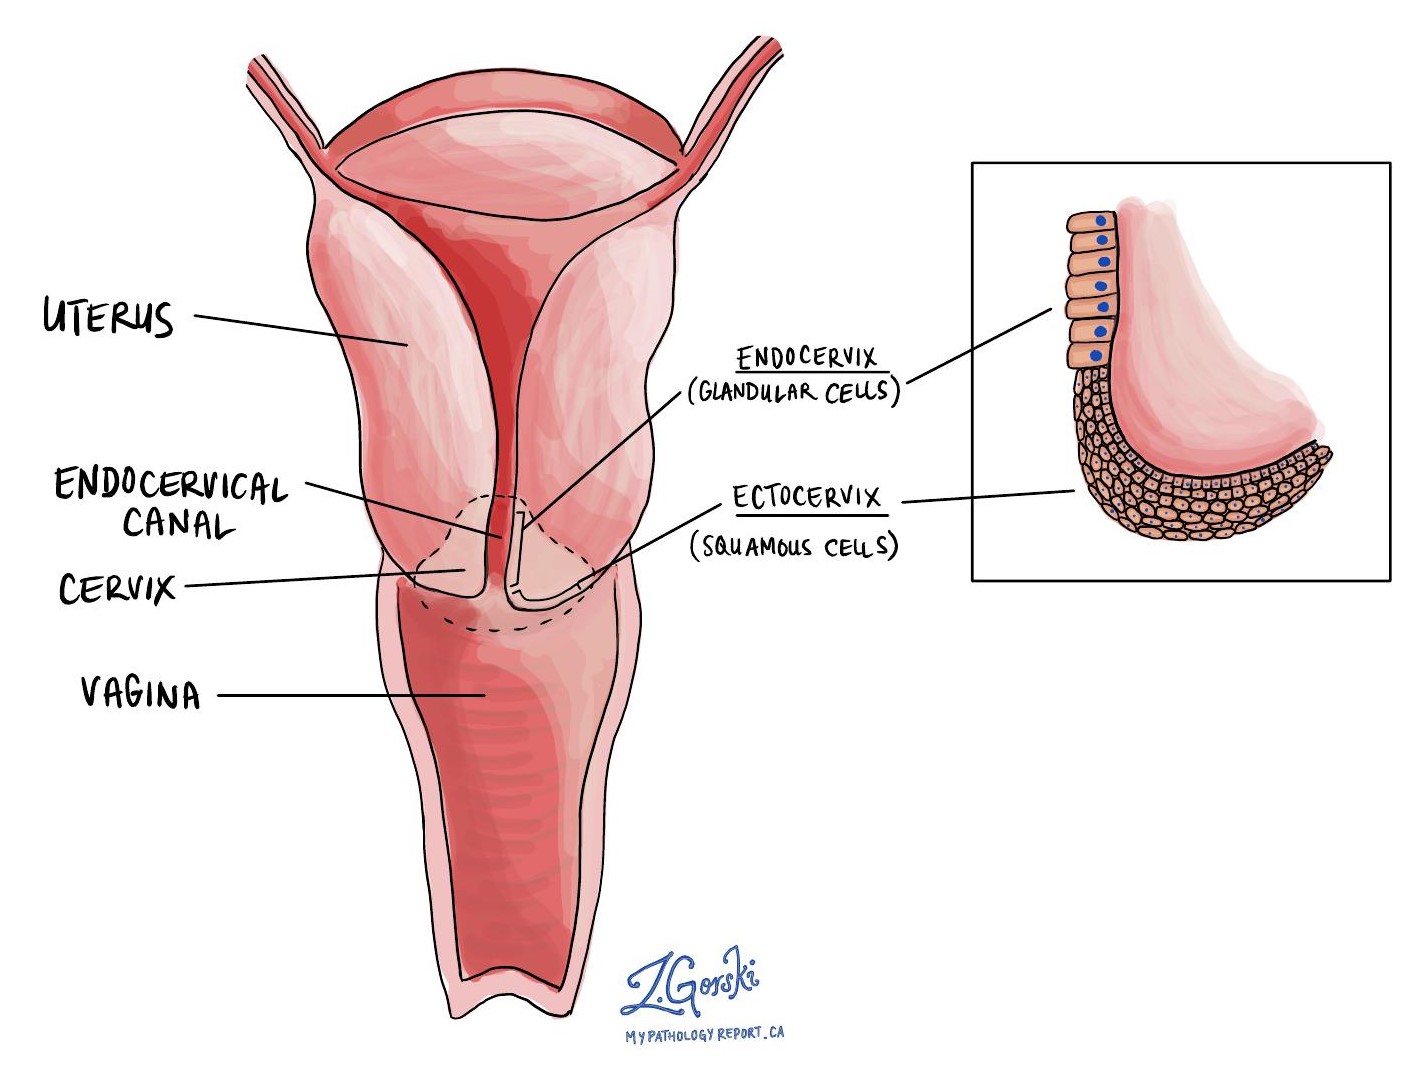 The cervix